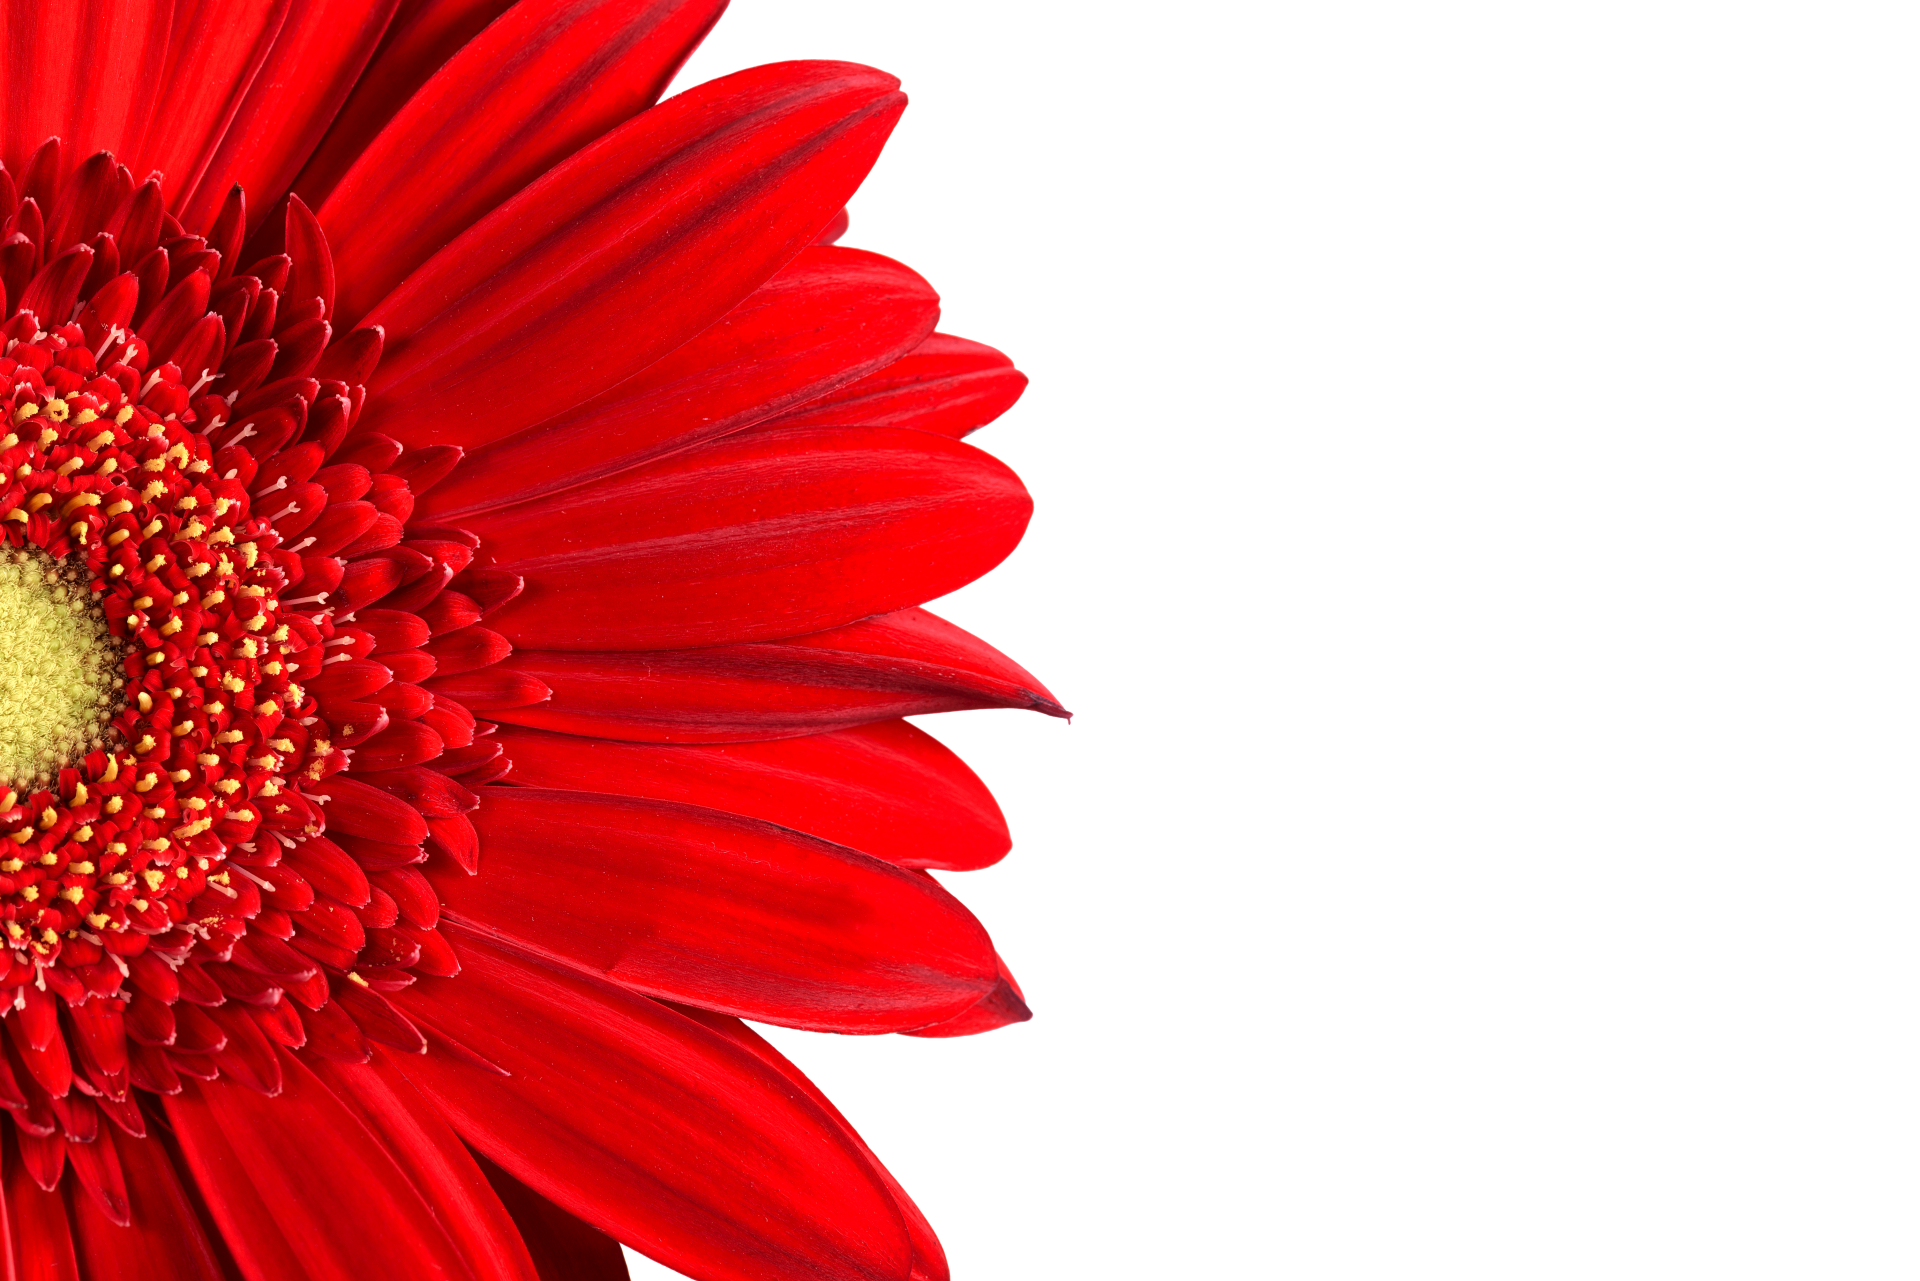 Red Gerbera Daisy